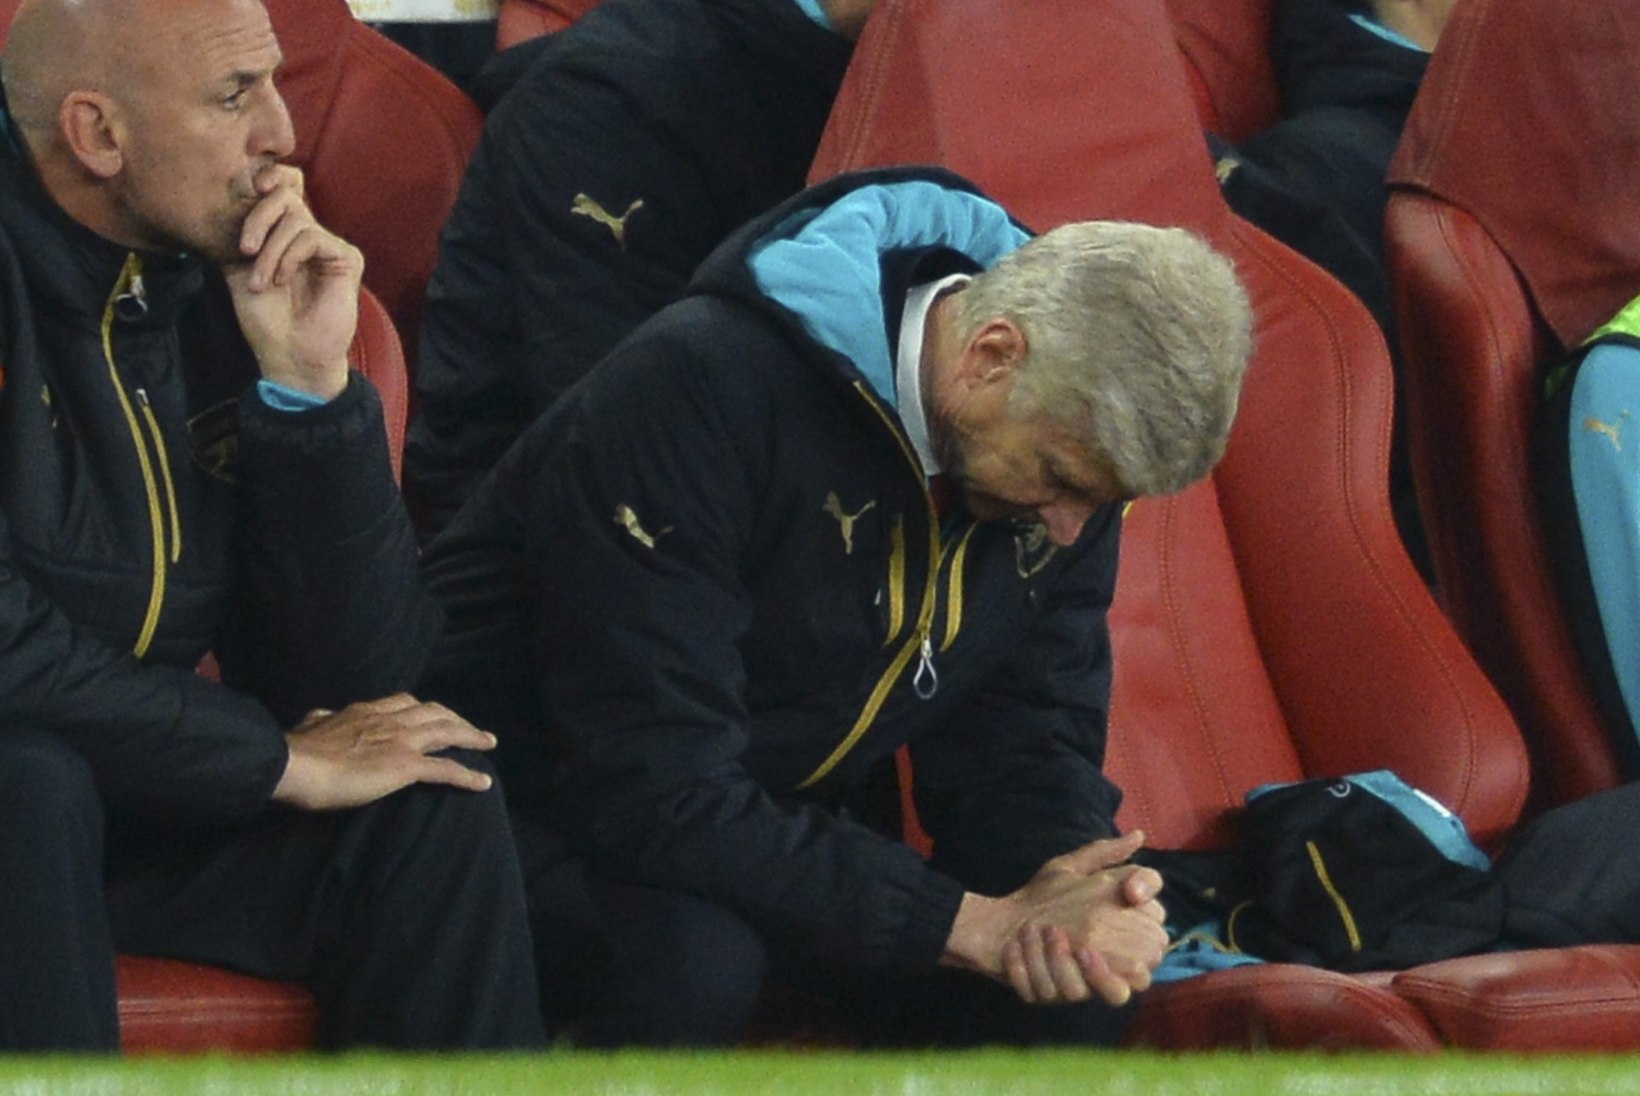 Arsenali peatreener tõreles peale üllatuskaotust meediaga: ma ei pea siin istuma ja teile oma igat otsust selgitama